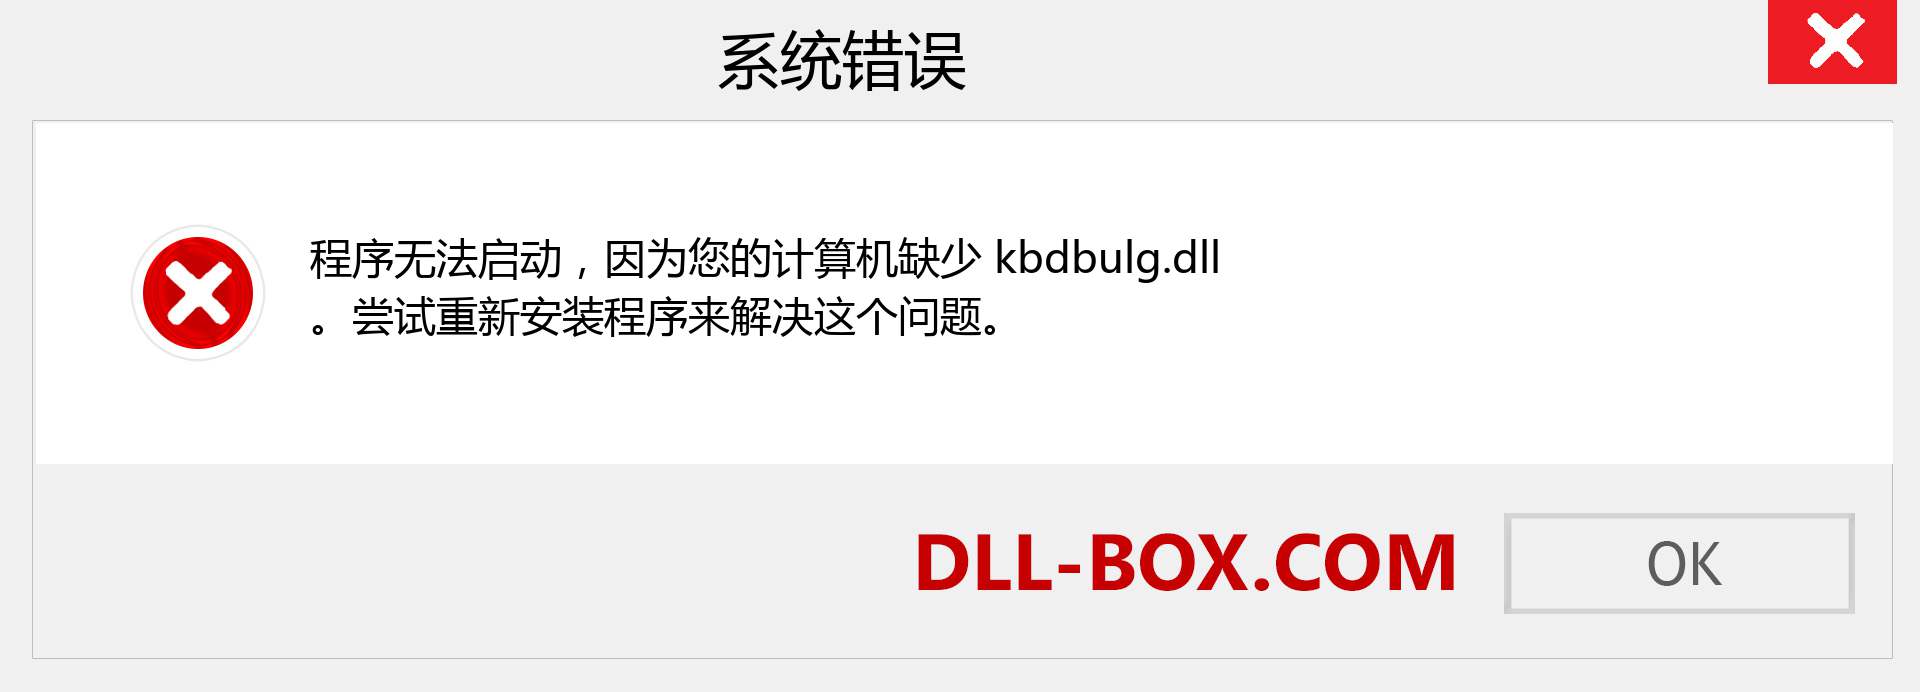 kbdbulg.dll 文件丢失？。 适用于 Windows 7、8、10 的下载 - 修复 Windows、照片、图像上的 kbdbulg dll 丢失错误